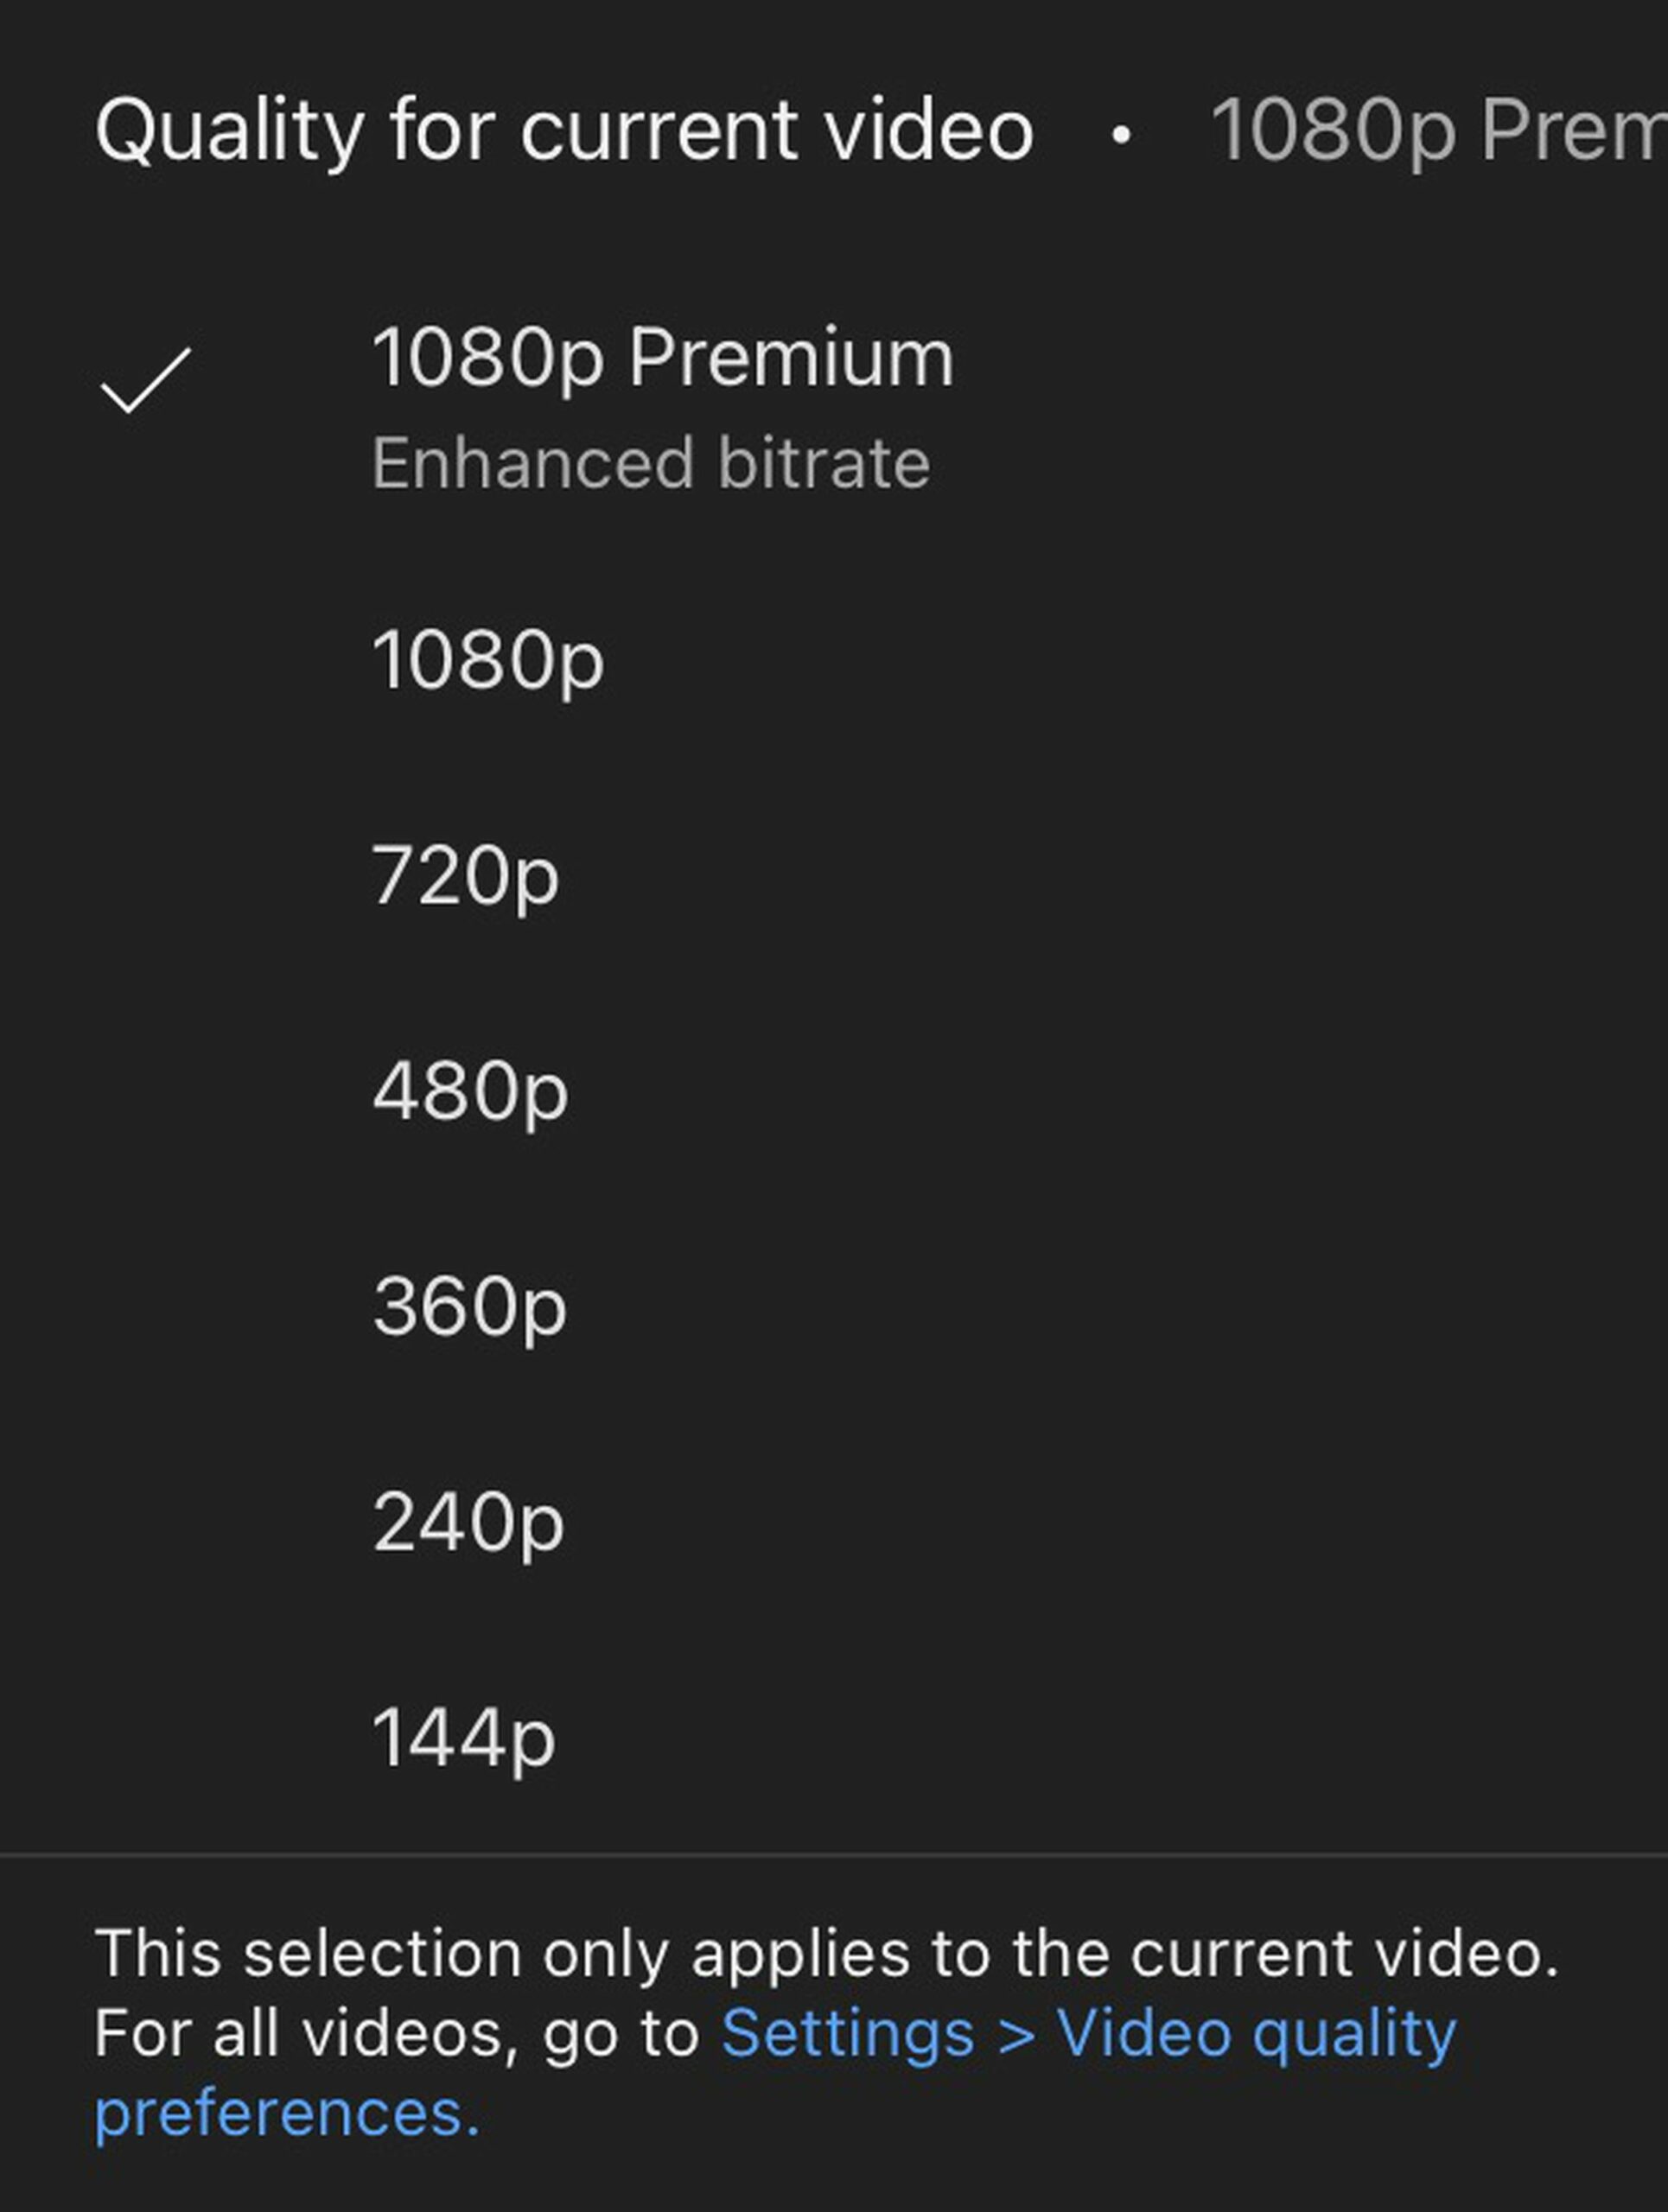 YouTube thử nghiệm tùy chọn 1080p chất lượng cao hơn cho người dùng Premium